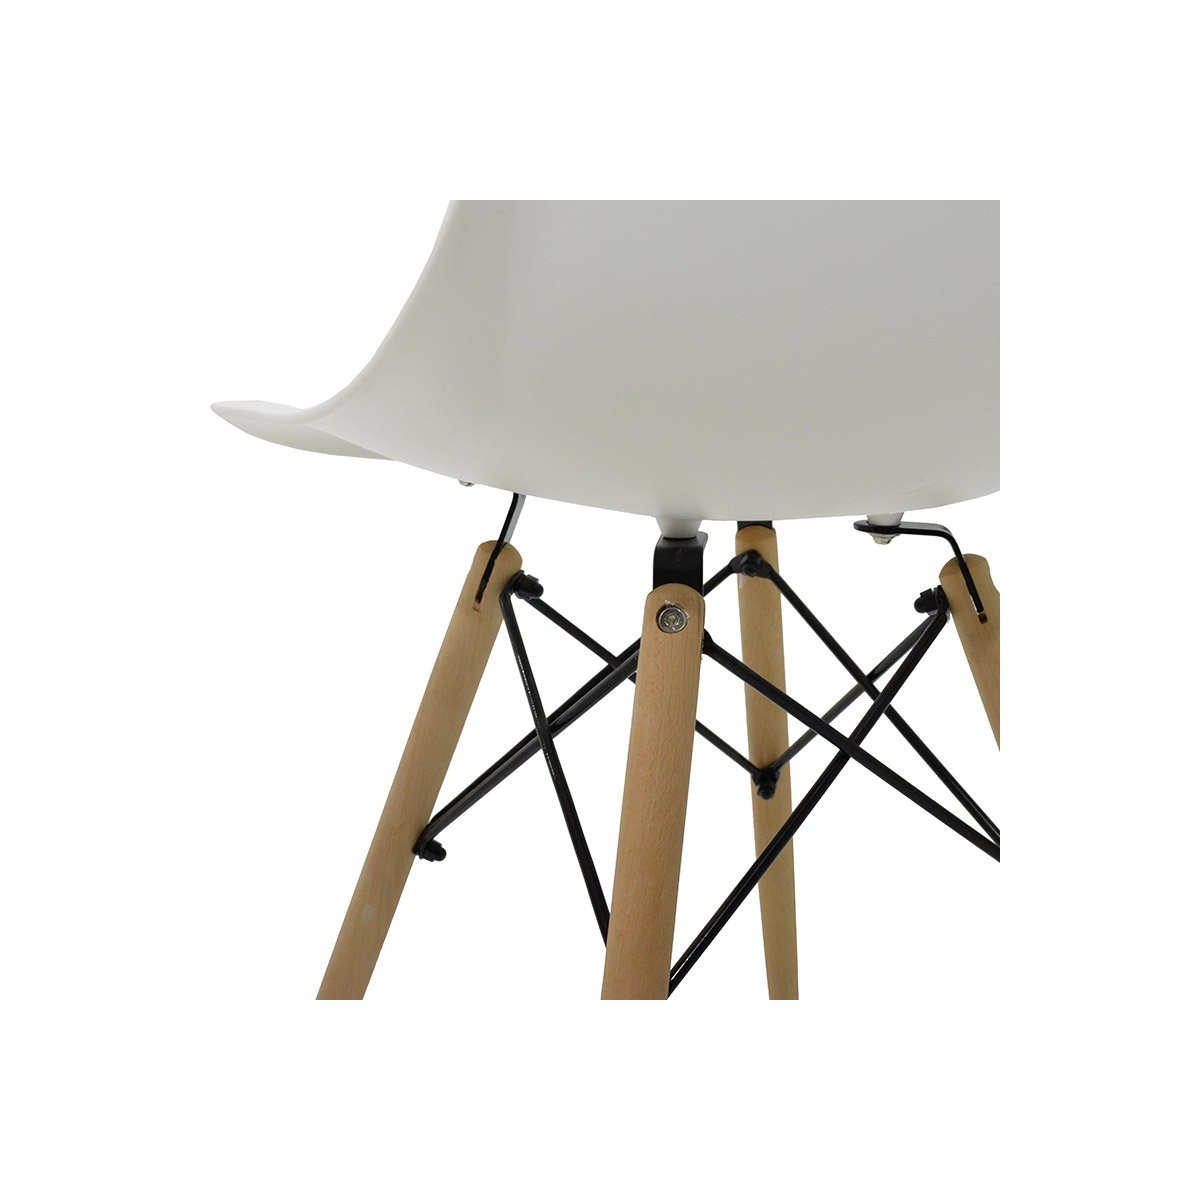 Καρέκλα "ACROPOL" από πολυπροπυλένιο σε χρώμα λευκό 52.5x46.50x82.5